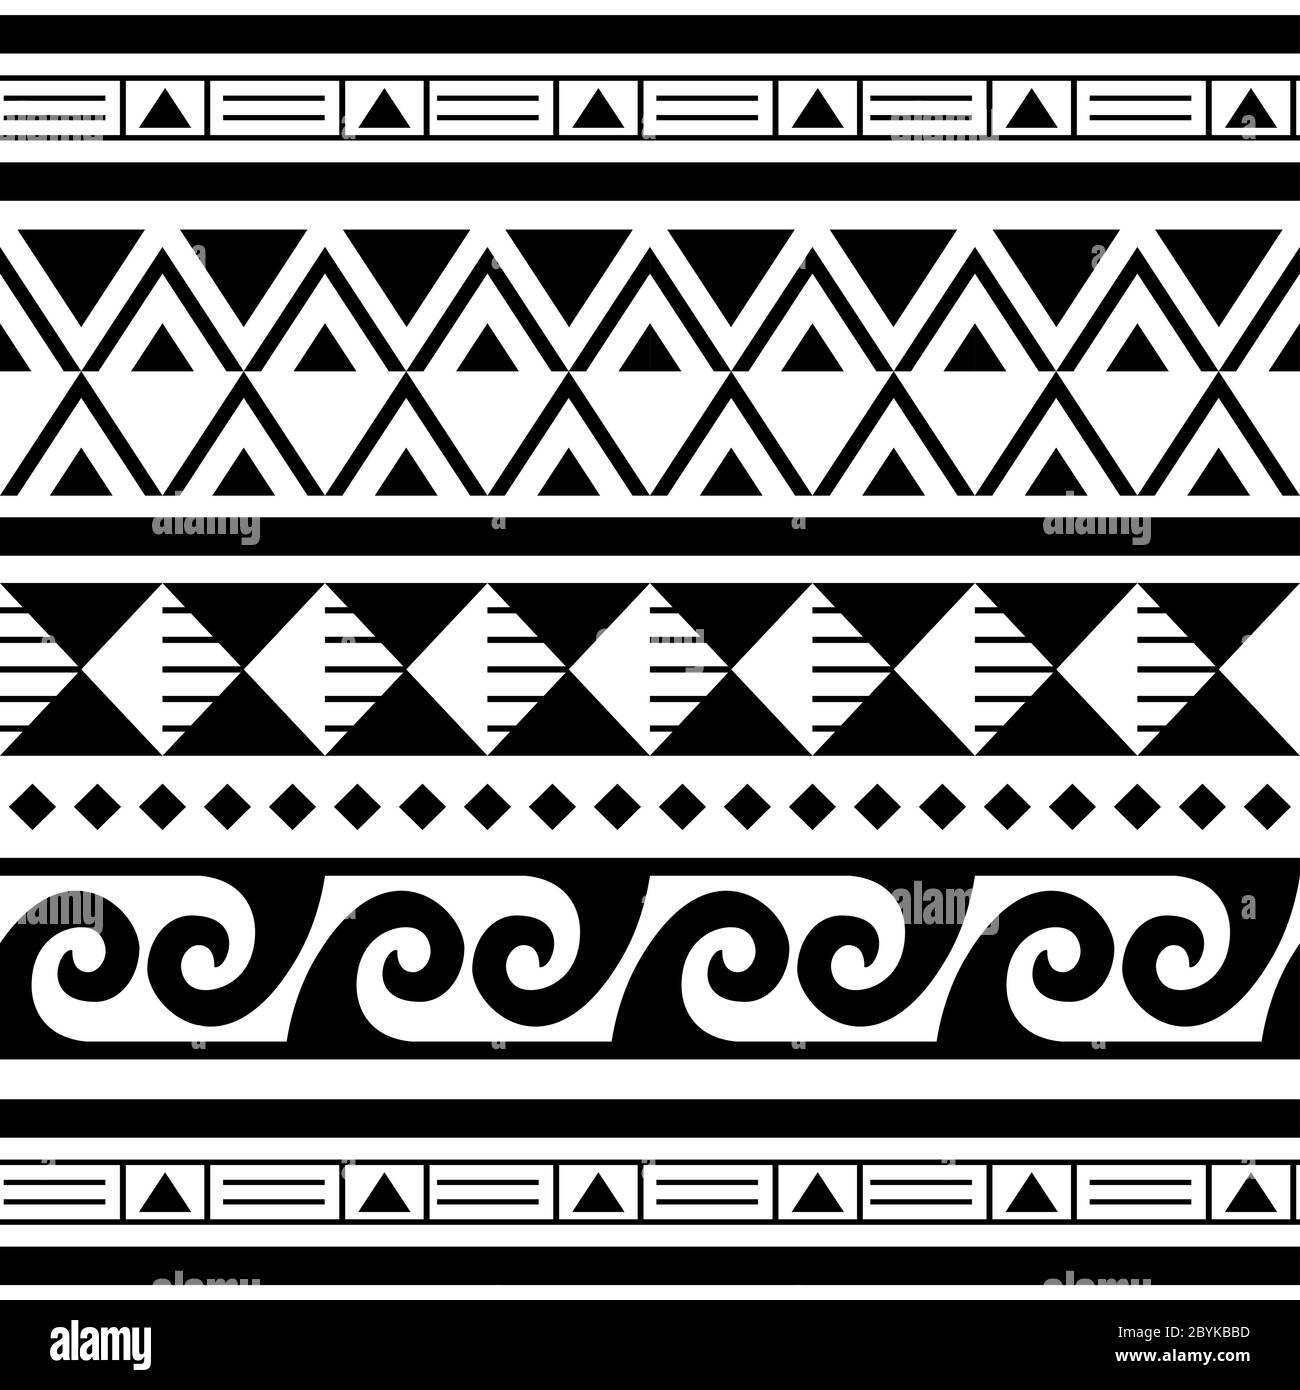 Disegno geometrico vettoriale senza giunture Maori polinesiano, tribale hawaiano Illustrazione Vettoriale